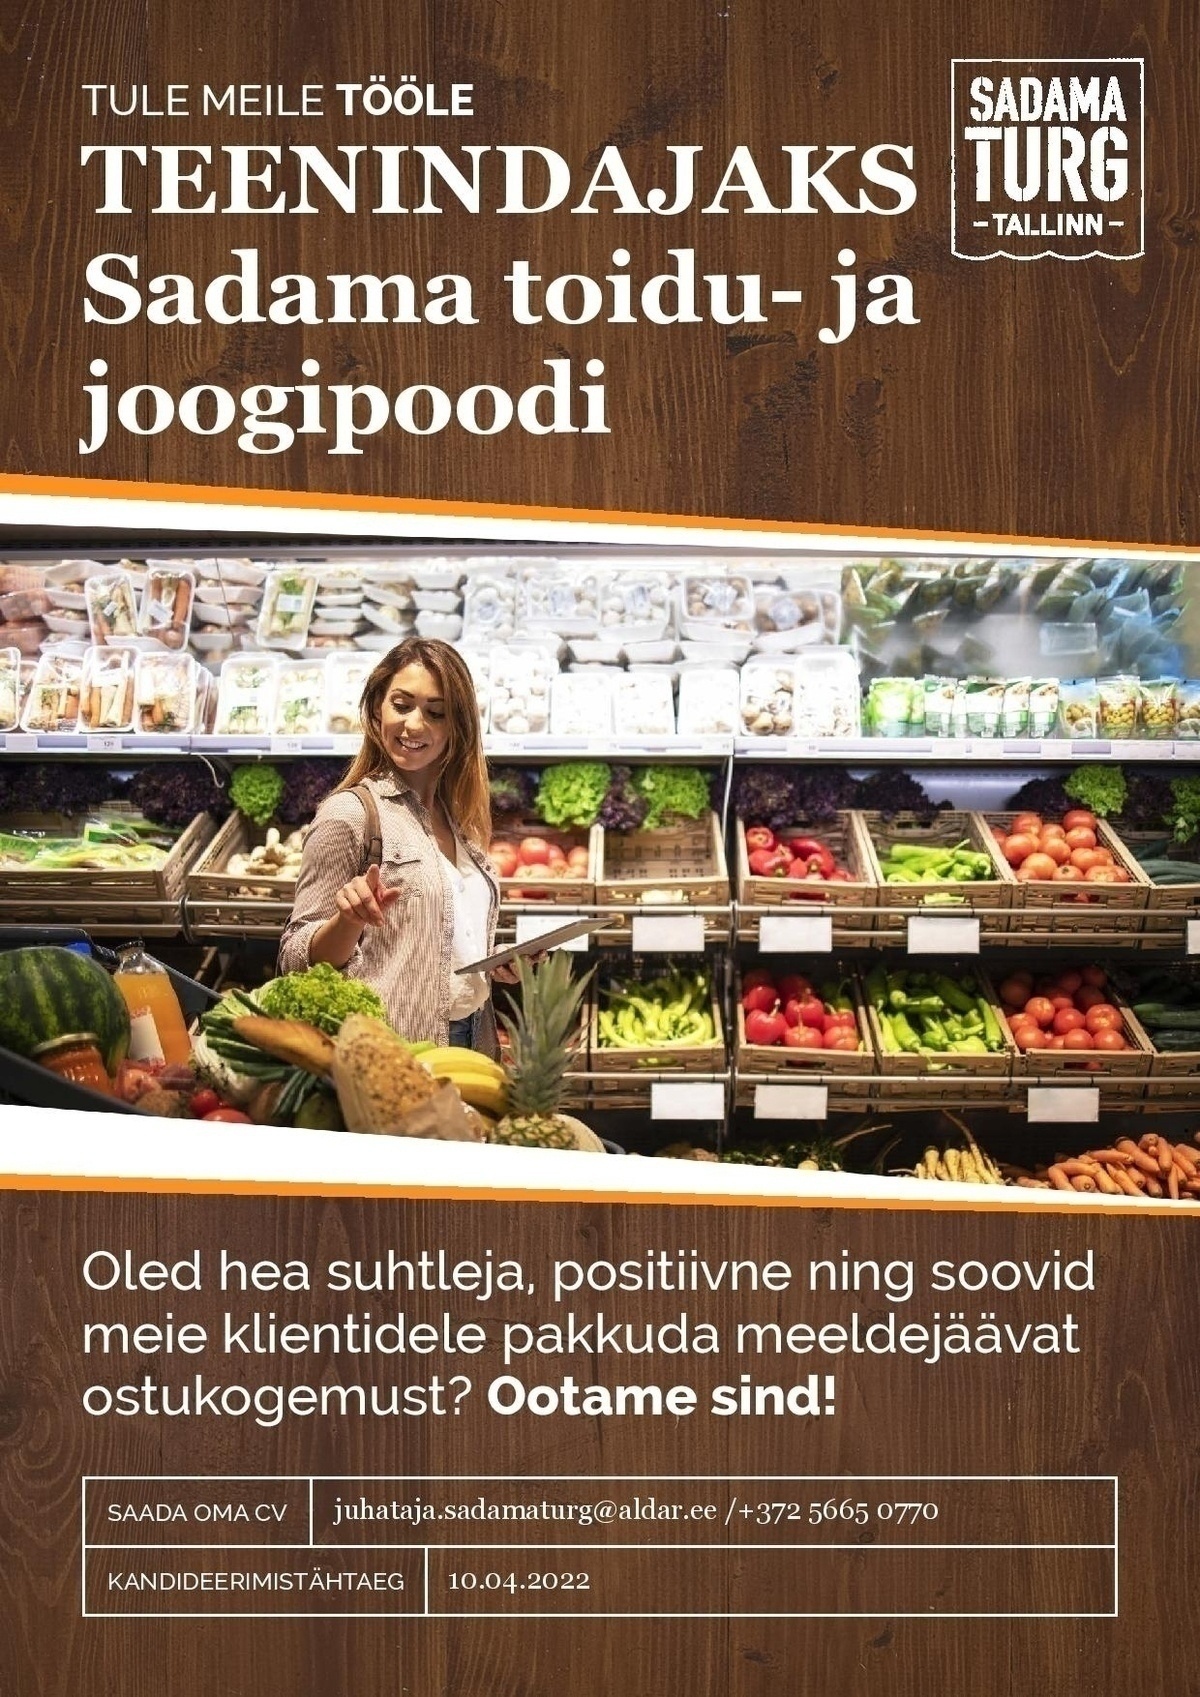 OÜ Aldar Eesti Klienditeenindaja Sadama Turu toidu- ja joogipoodi